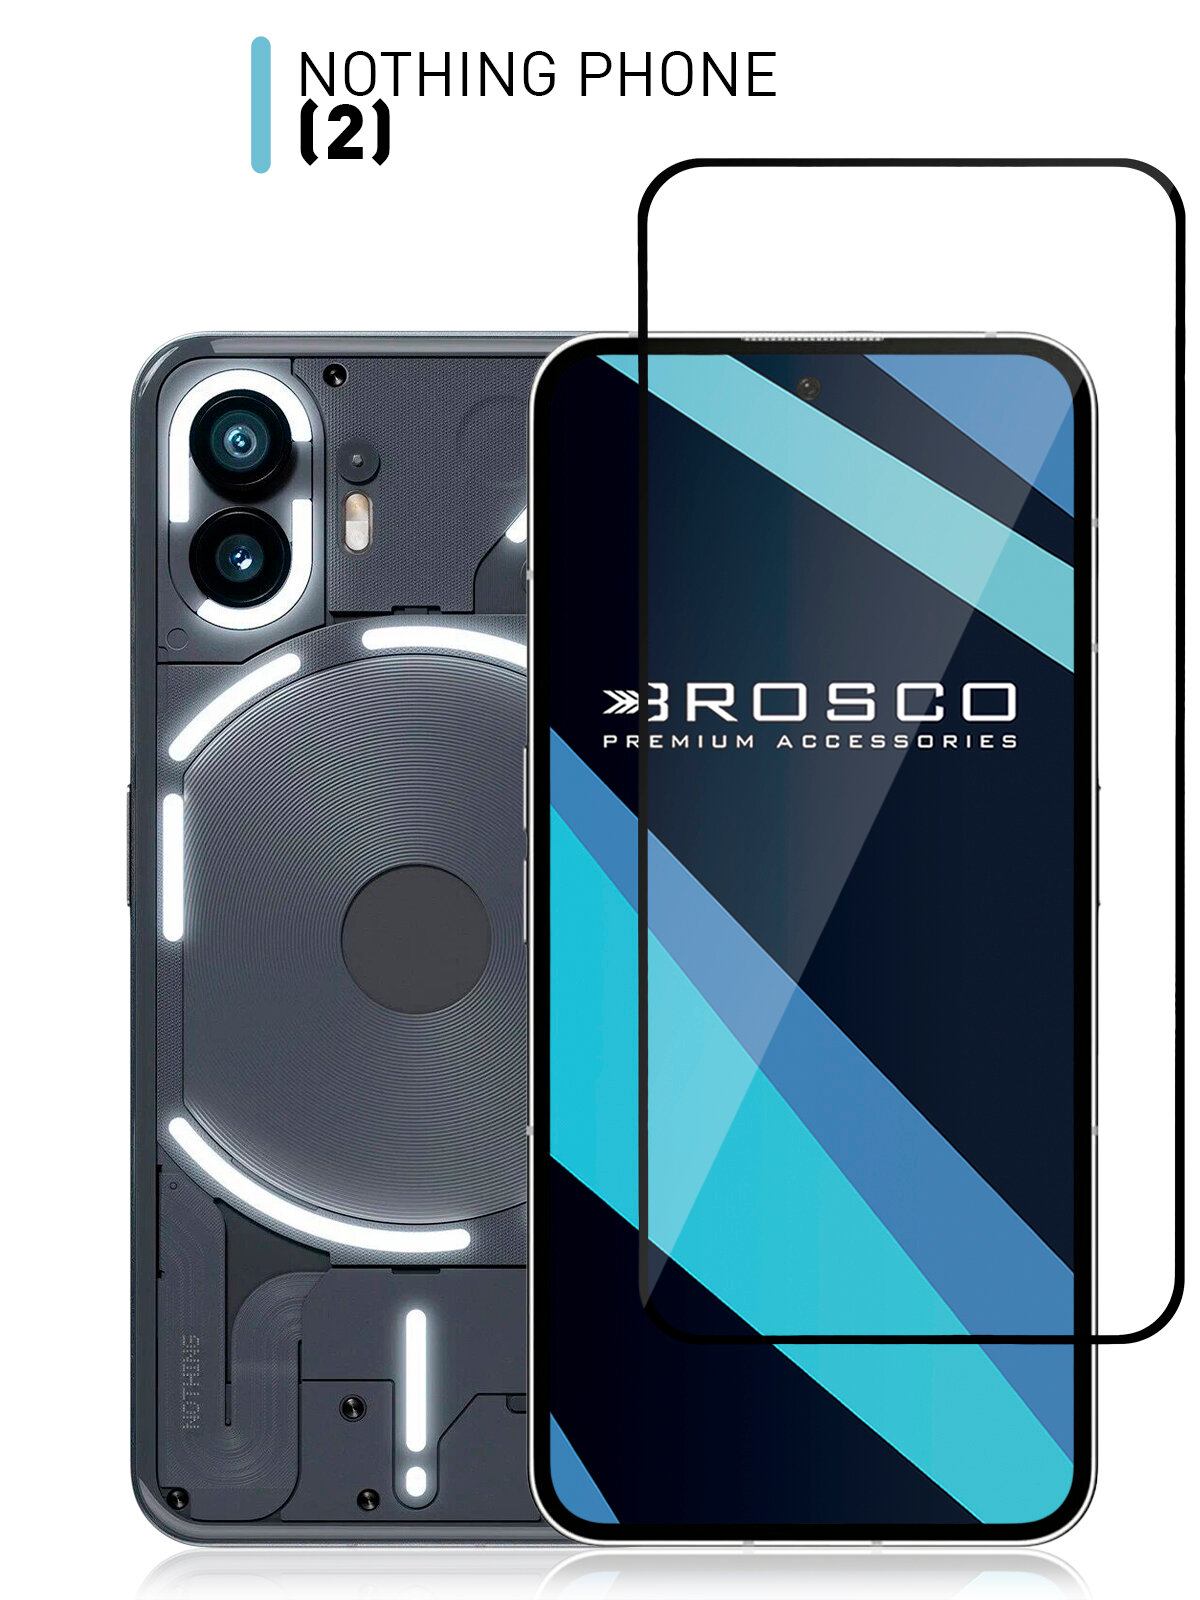 Защитное стекло ROSCO для Nothing Phone 2 (Насинг фон 2 ) закалённое с олеофобным покрытием, прозрачное стекло, с рамкой